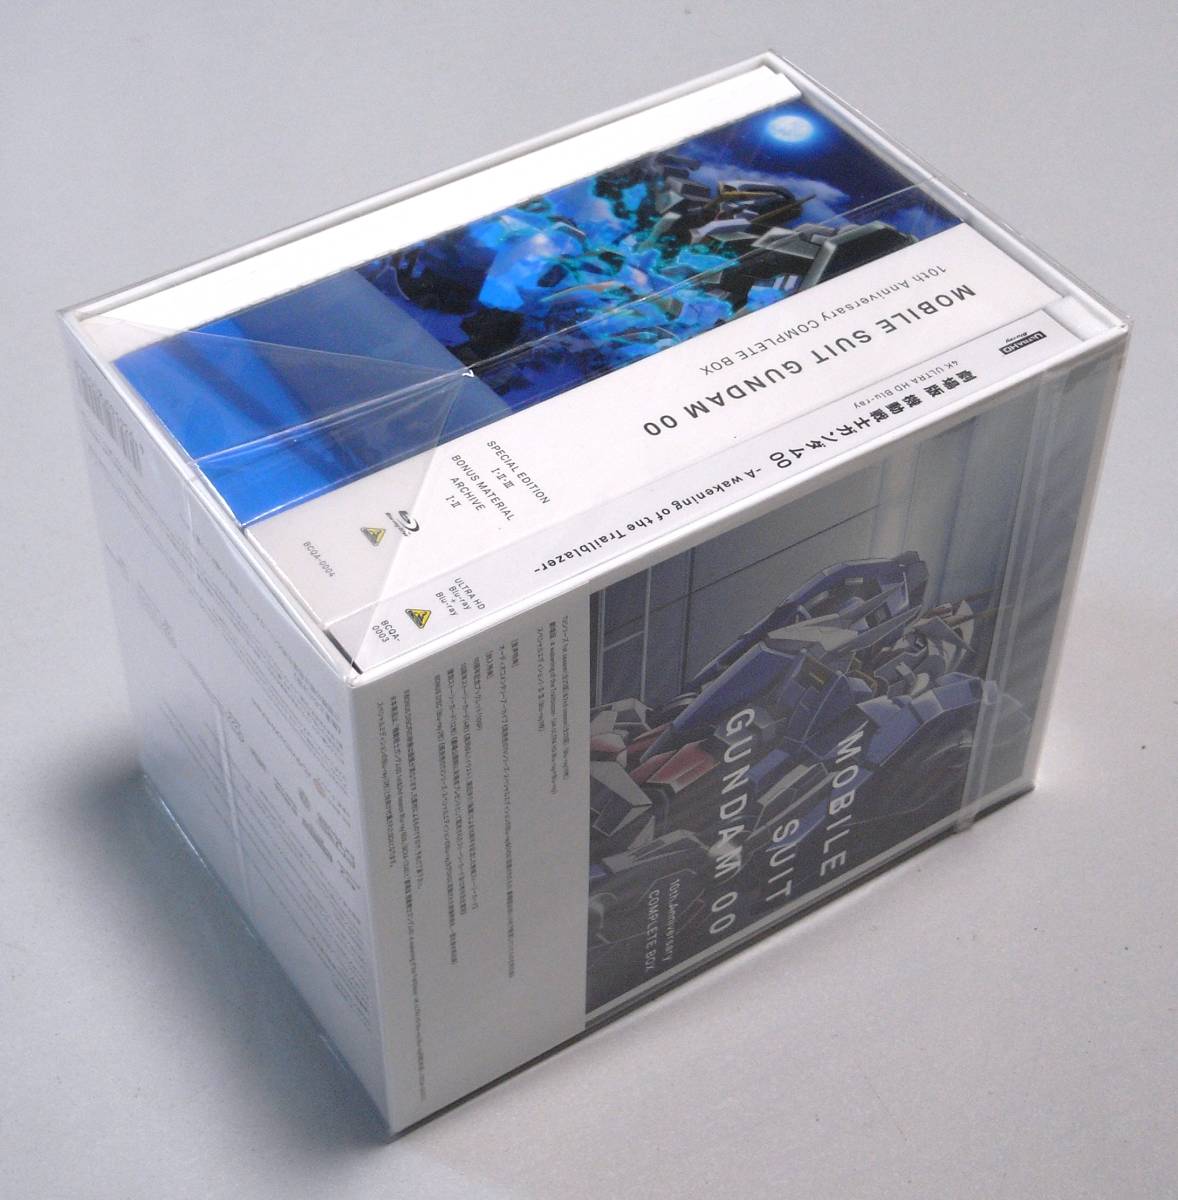 再×14入荷 機動戦士ガンダム00 Blu-ray COMPLETE BOX 初回生産限定 